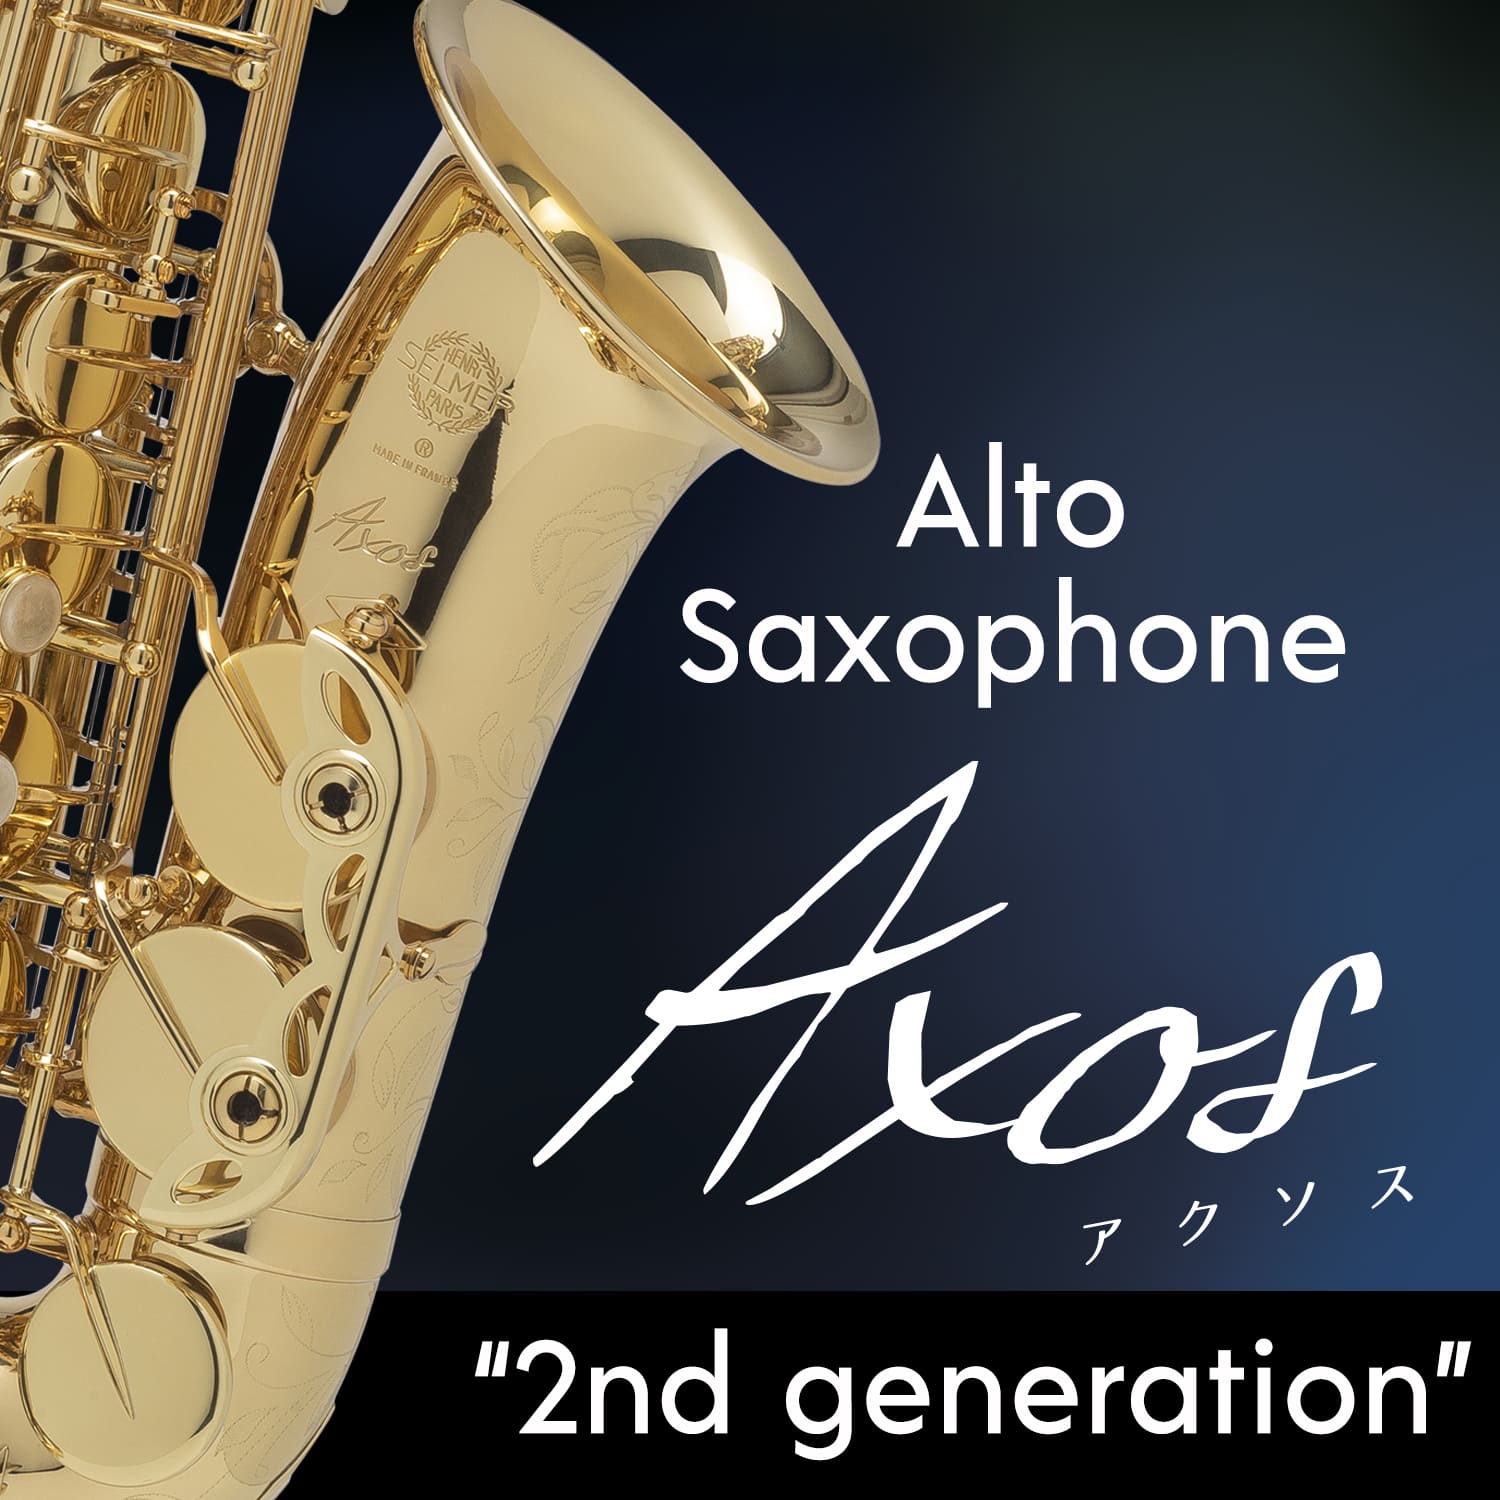 アルトサクソフォン「アクソス 2nd generation」